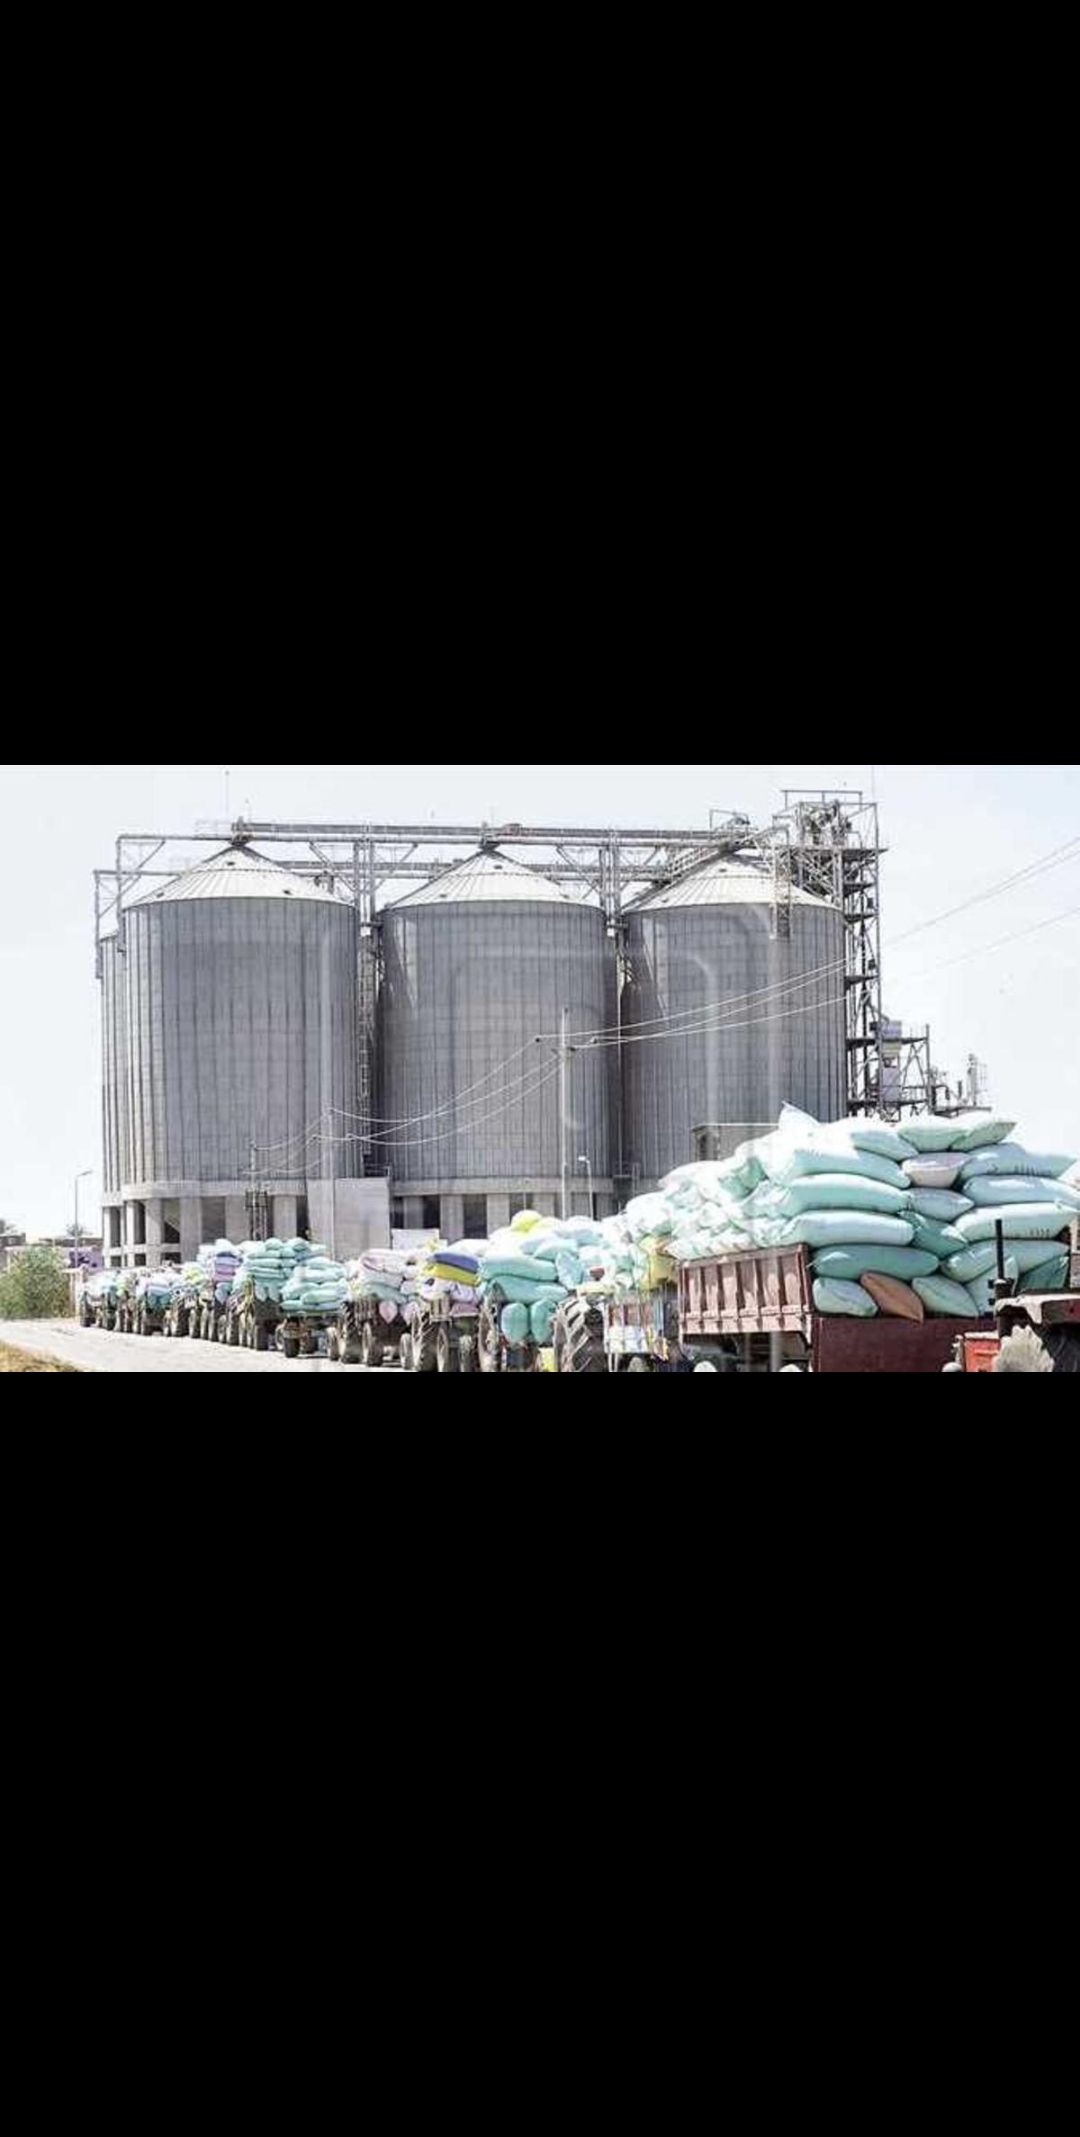 الغذاء العالمي يعلن إيقاف إنتاج القمح بعد قصف الحوثيين مطاحن البحر الأحمر